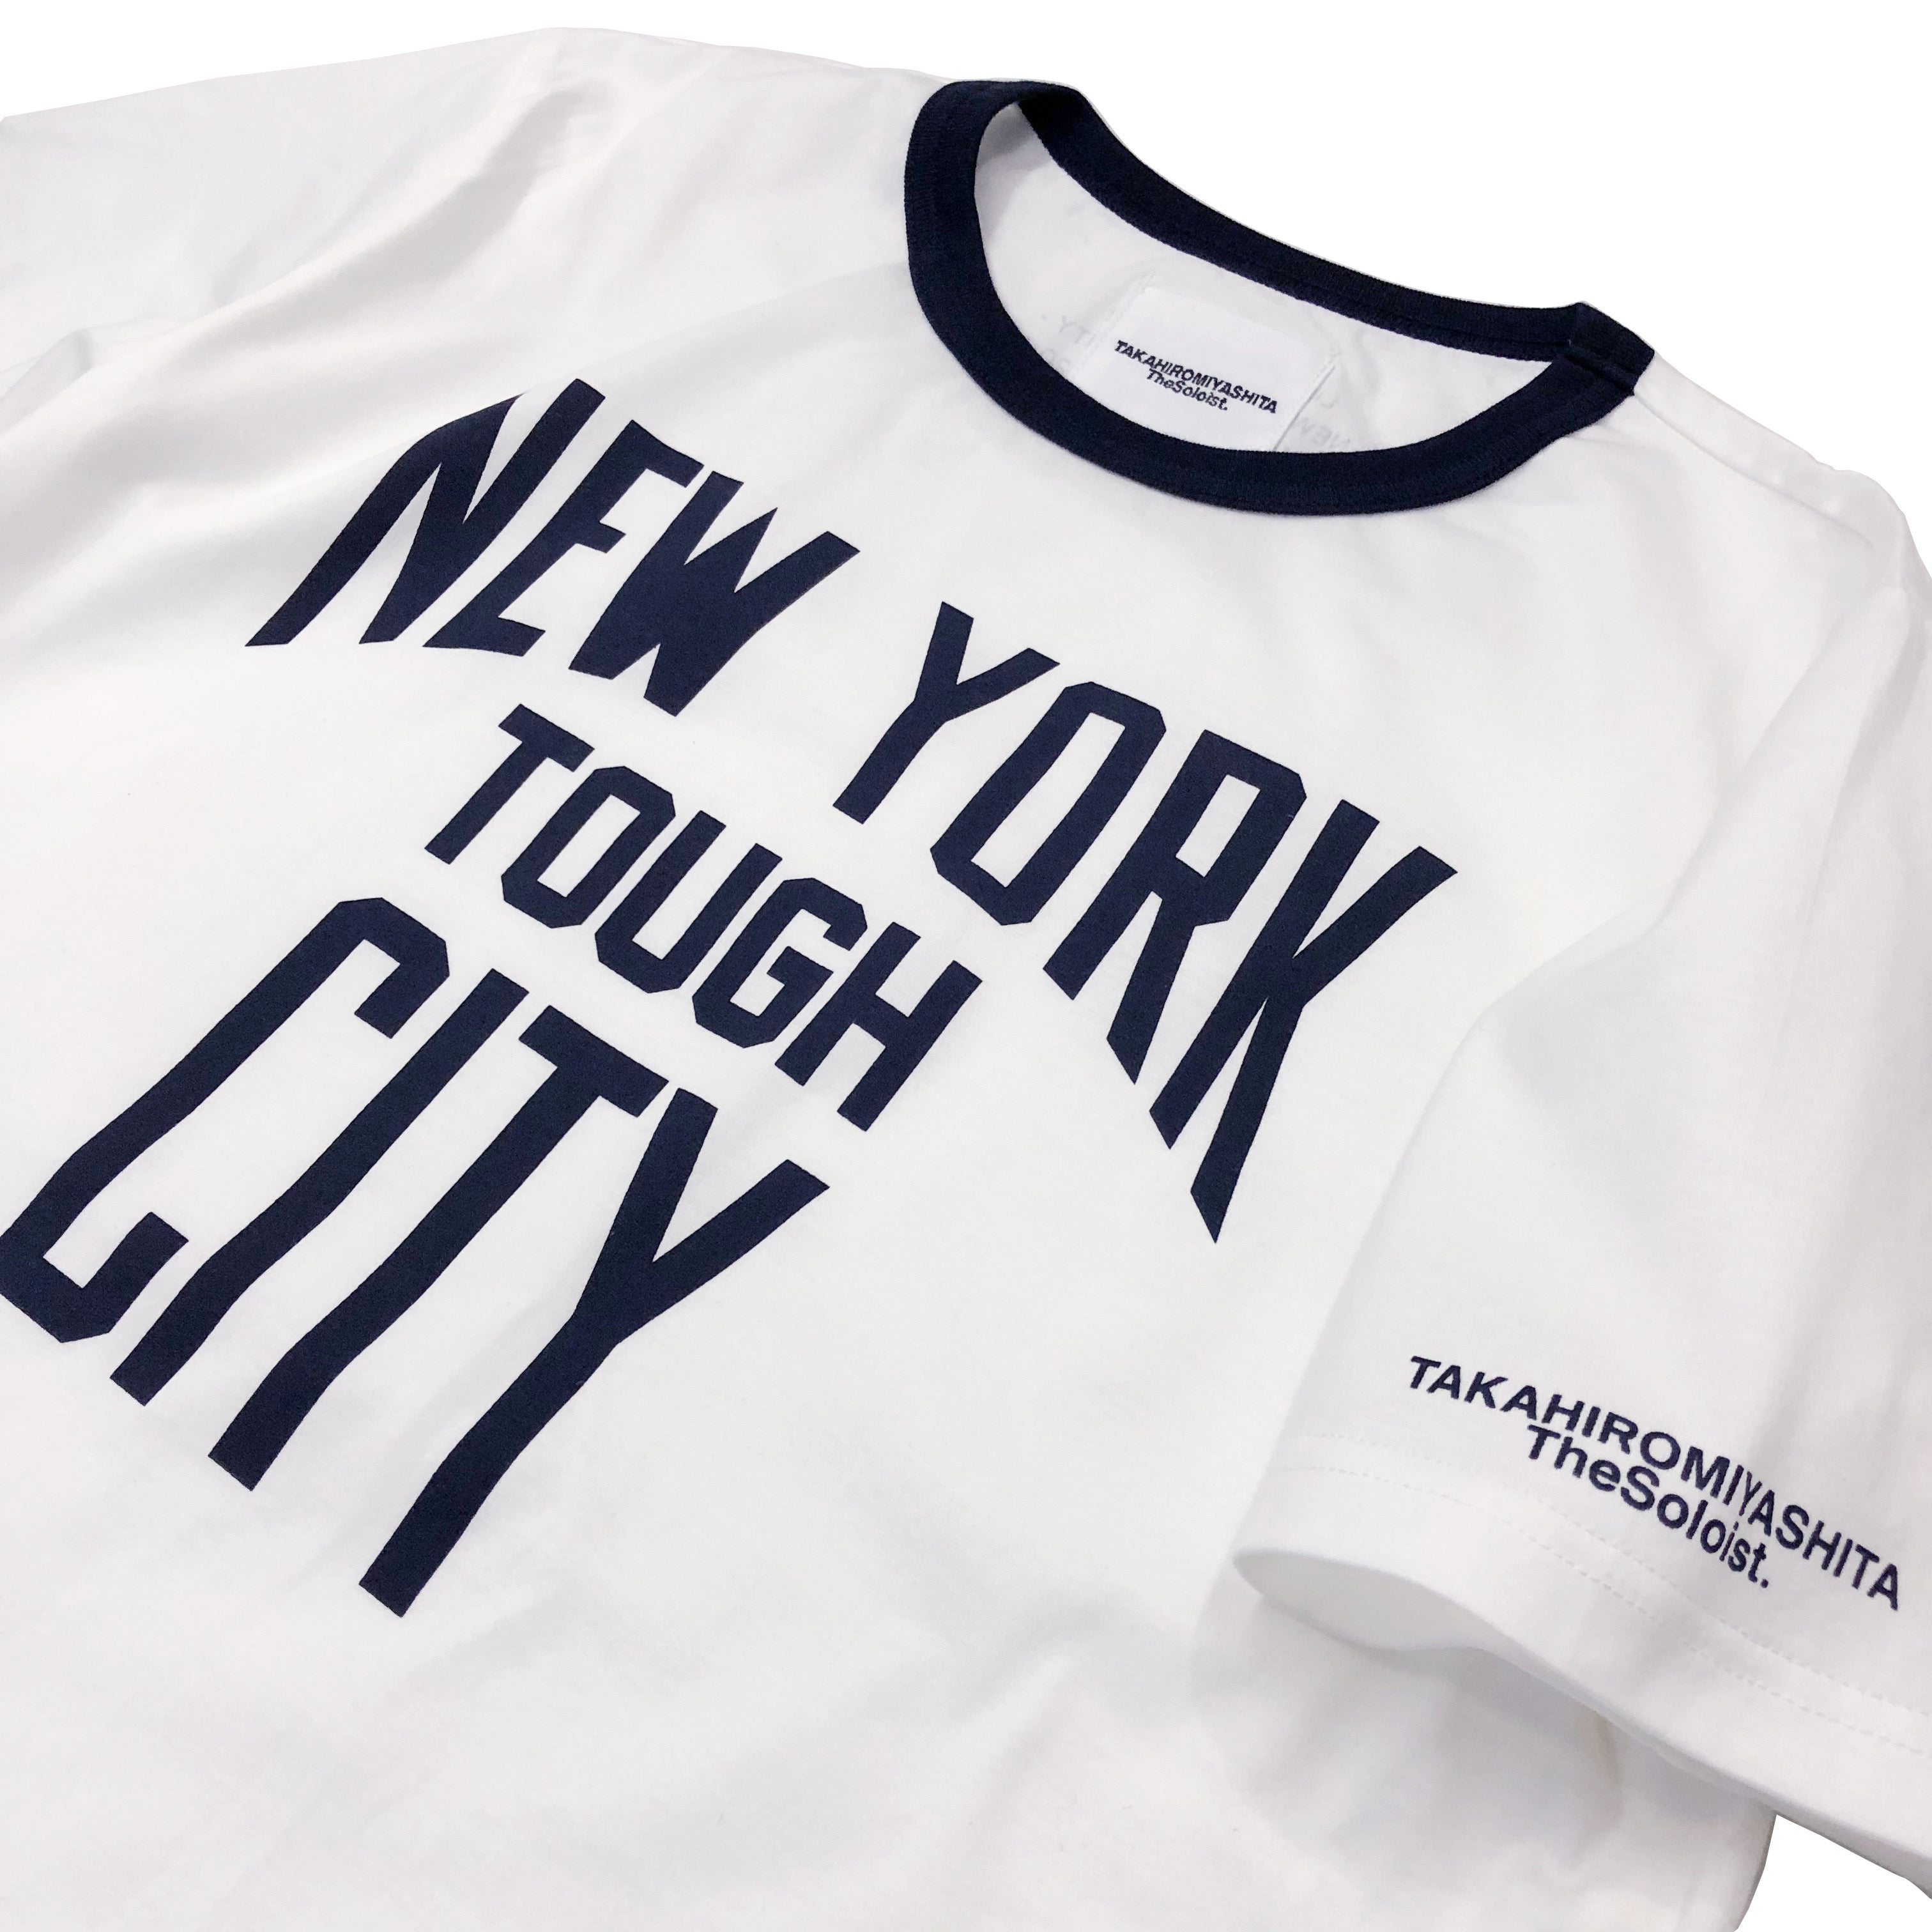 솔로이스트 50% 할인. "NEW YORK CITY TOUGH" 링거 티셔츠